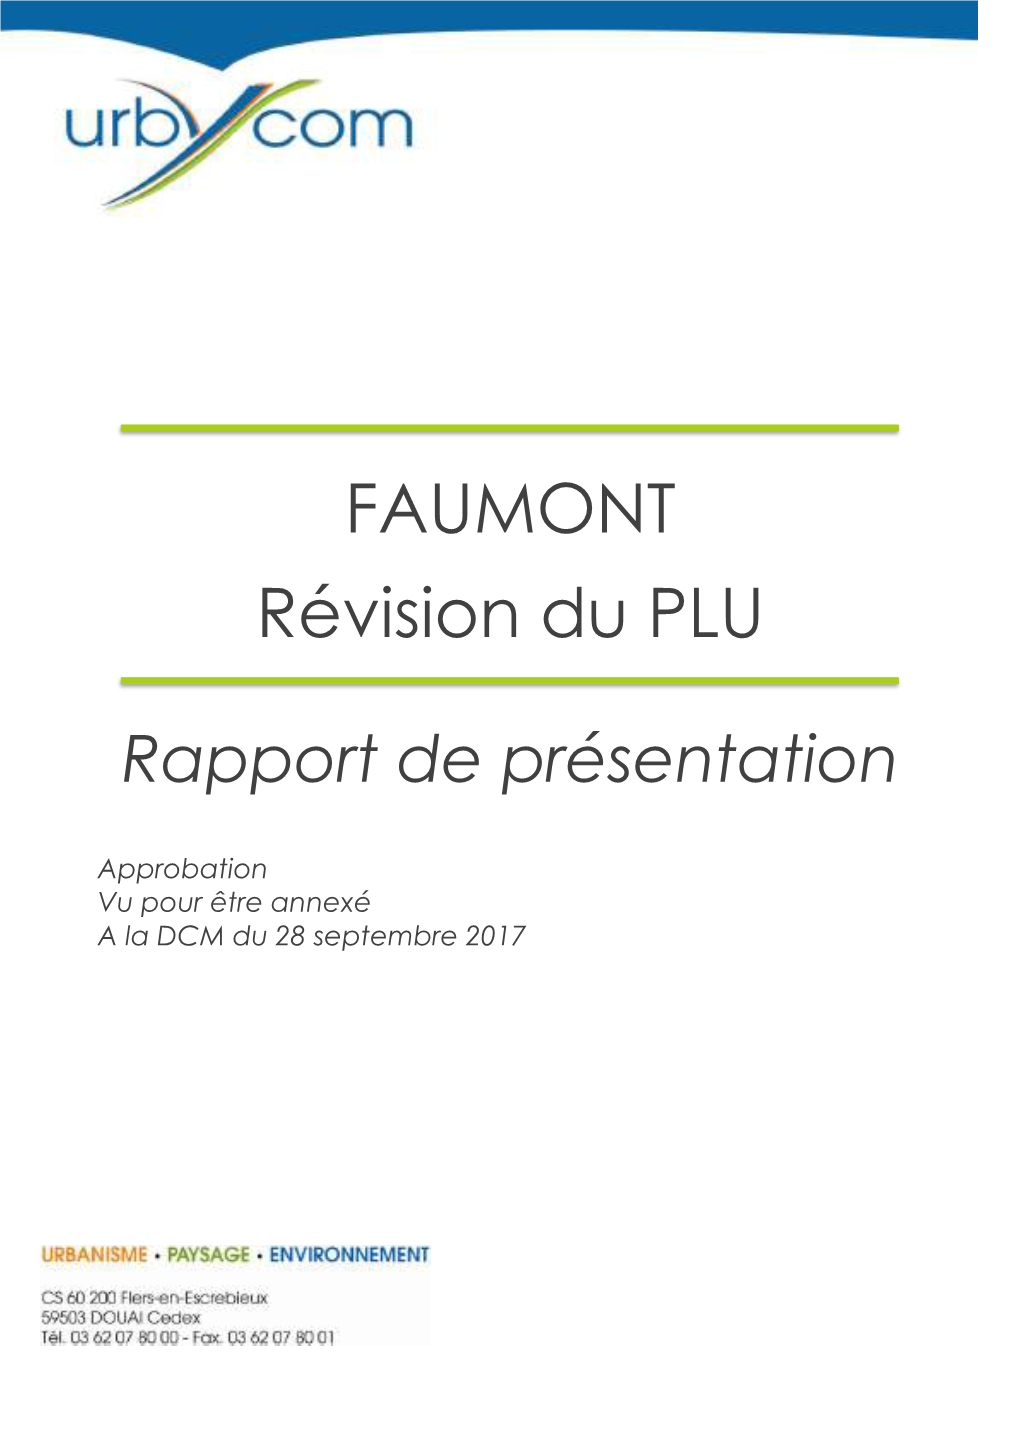 FAUMONT Révision Du PLU